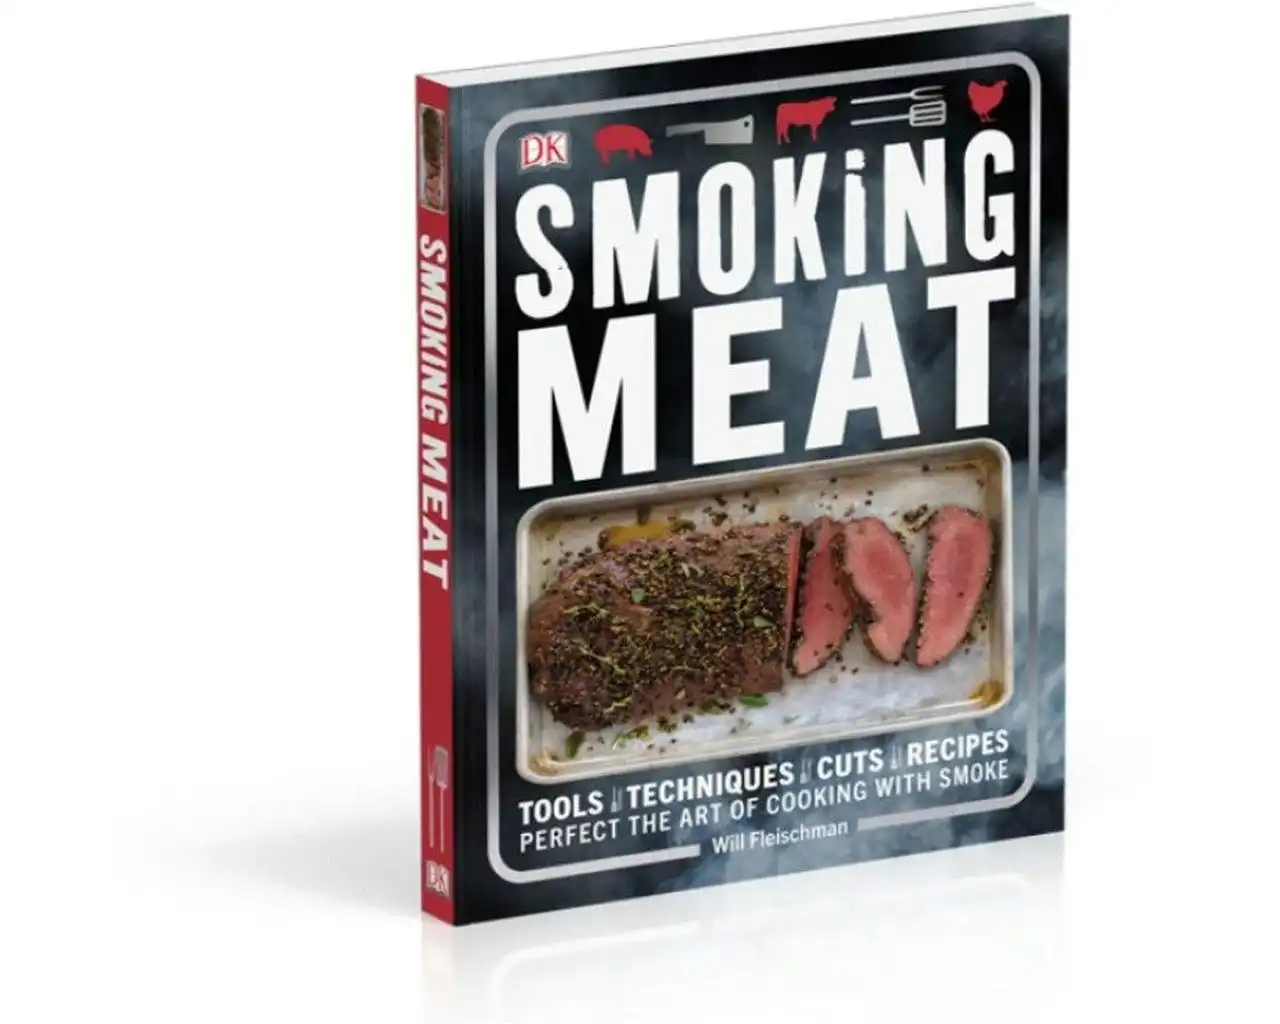 Smoking Meat Cookbook by Will Fleischman